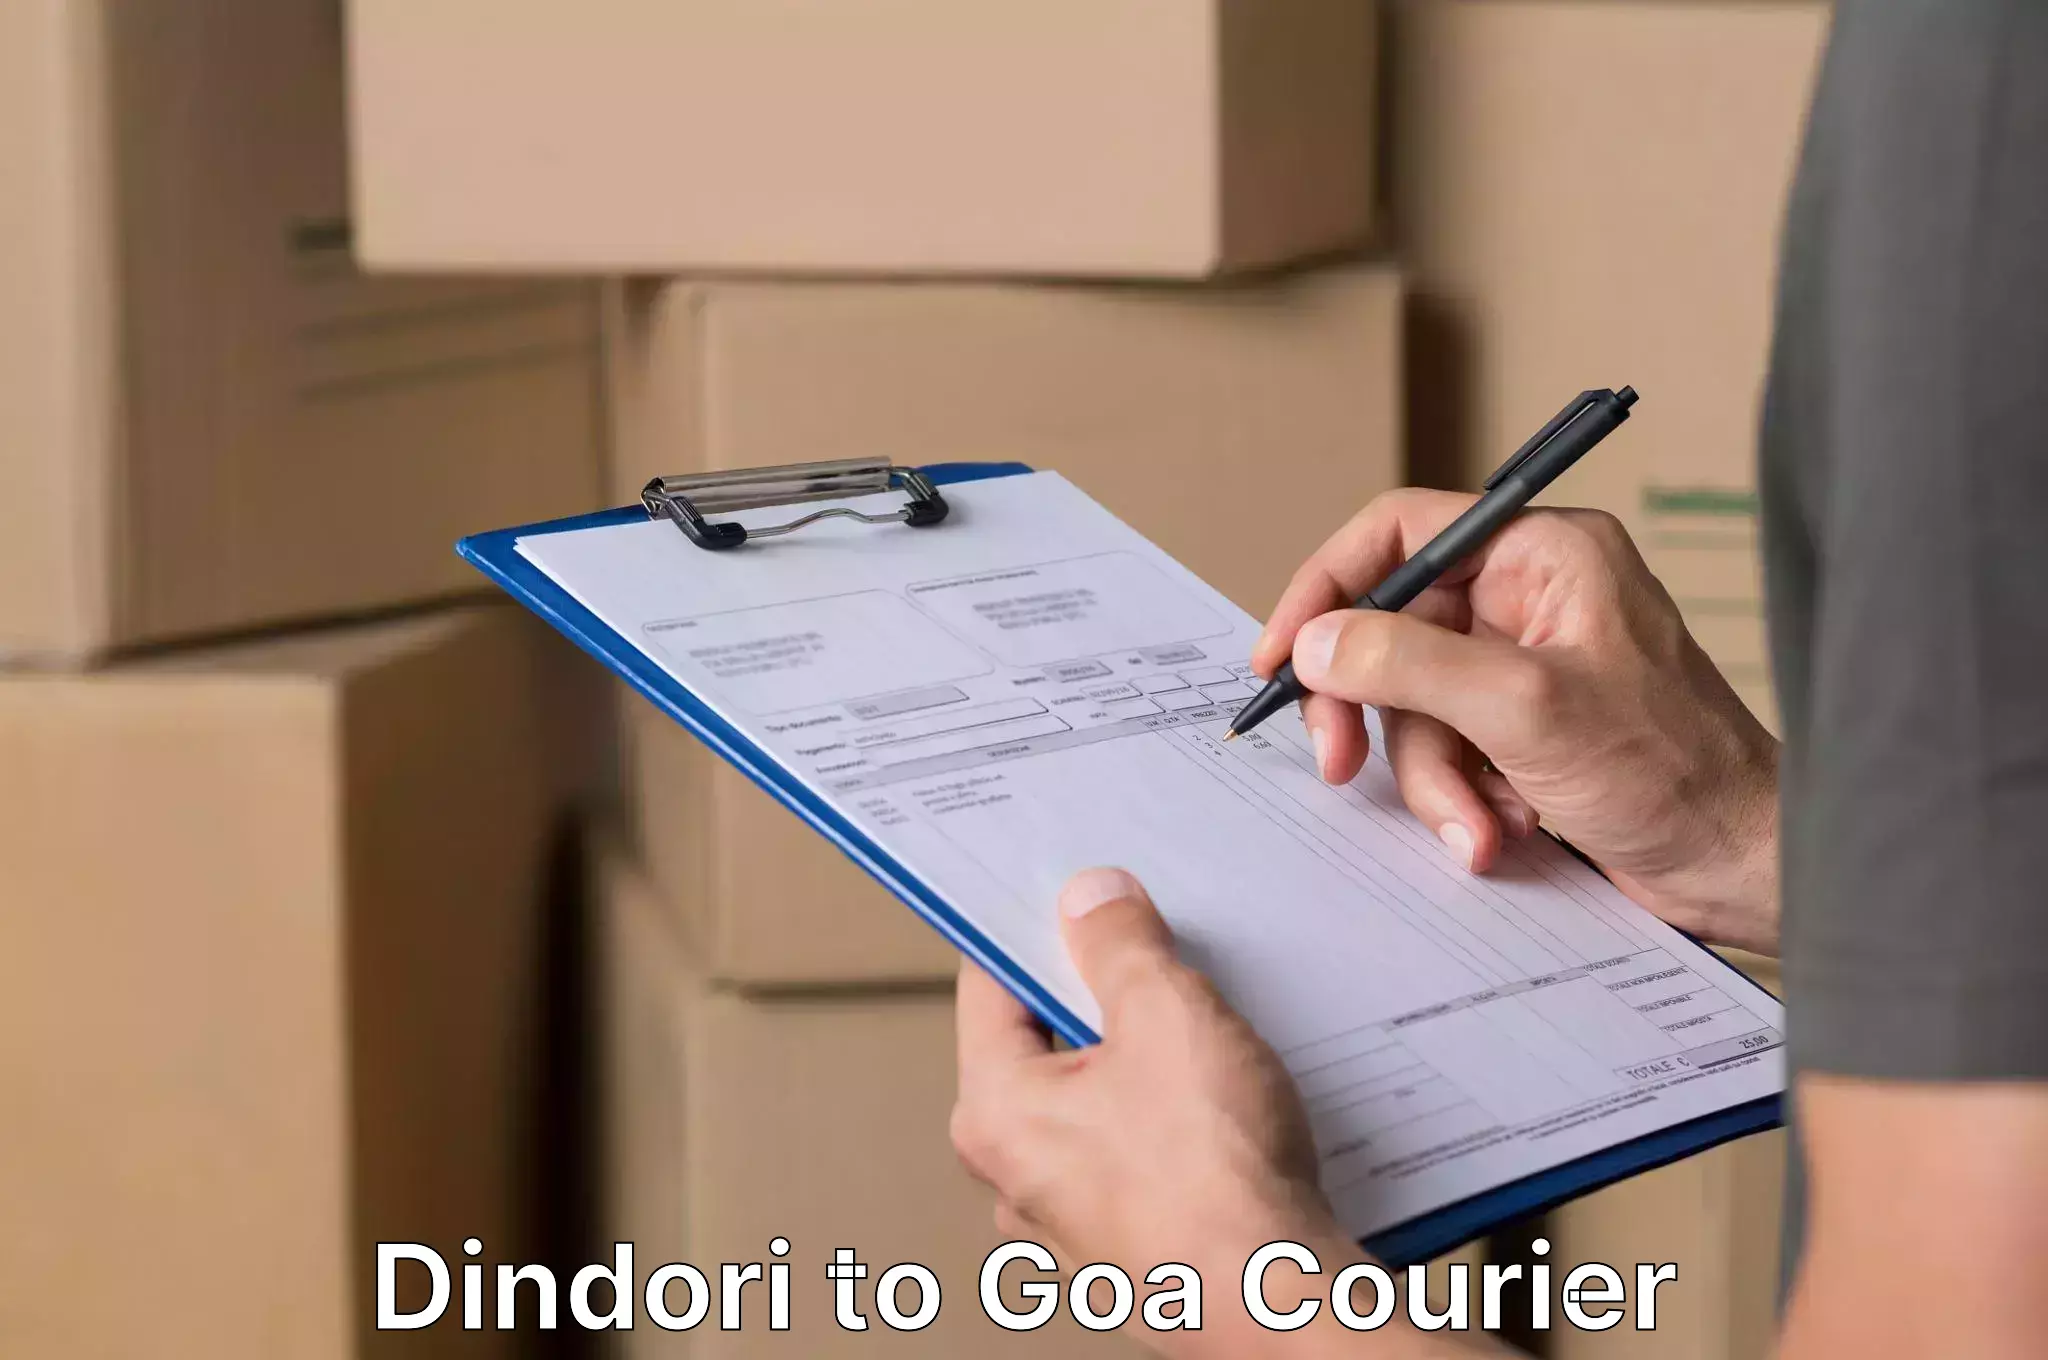 Furniture transport professionals Dindori to Goa University